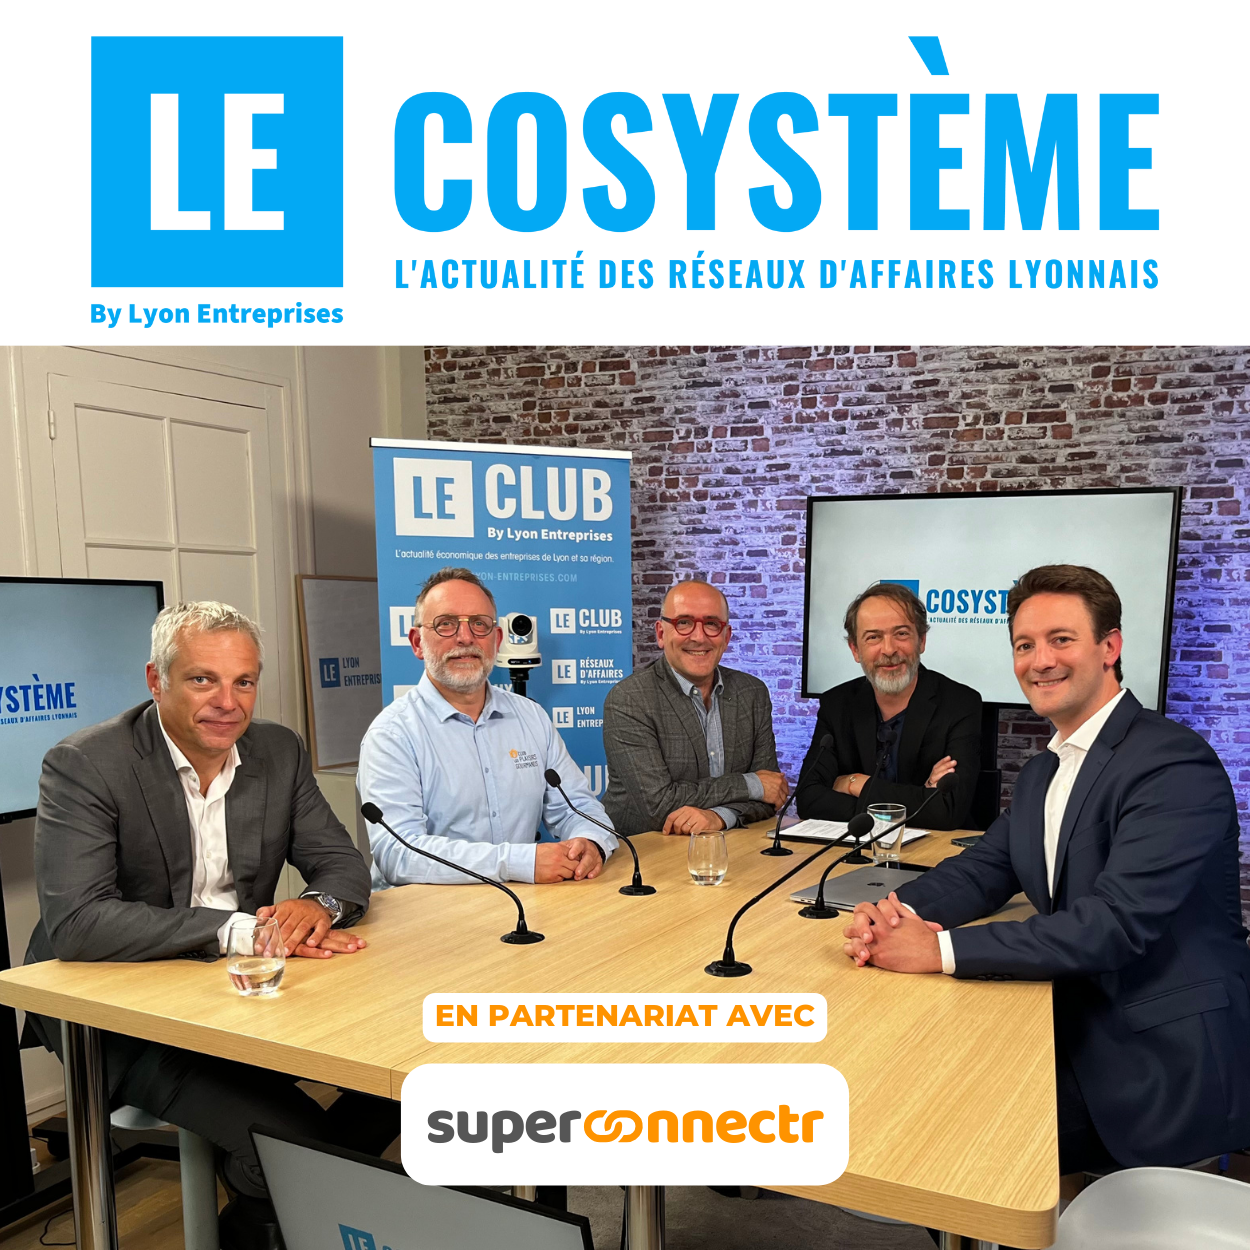 LEcosystème : l'émission TV des communautés et des réseaux d'affaires : The Lyinc (Lyon International Club) avec Brice Chambard et le Club Les Plaisirs Gourmands avec Laurent Montmain.